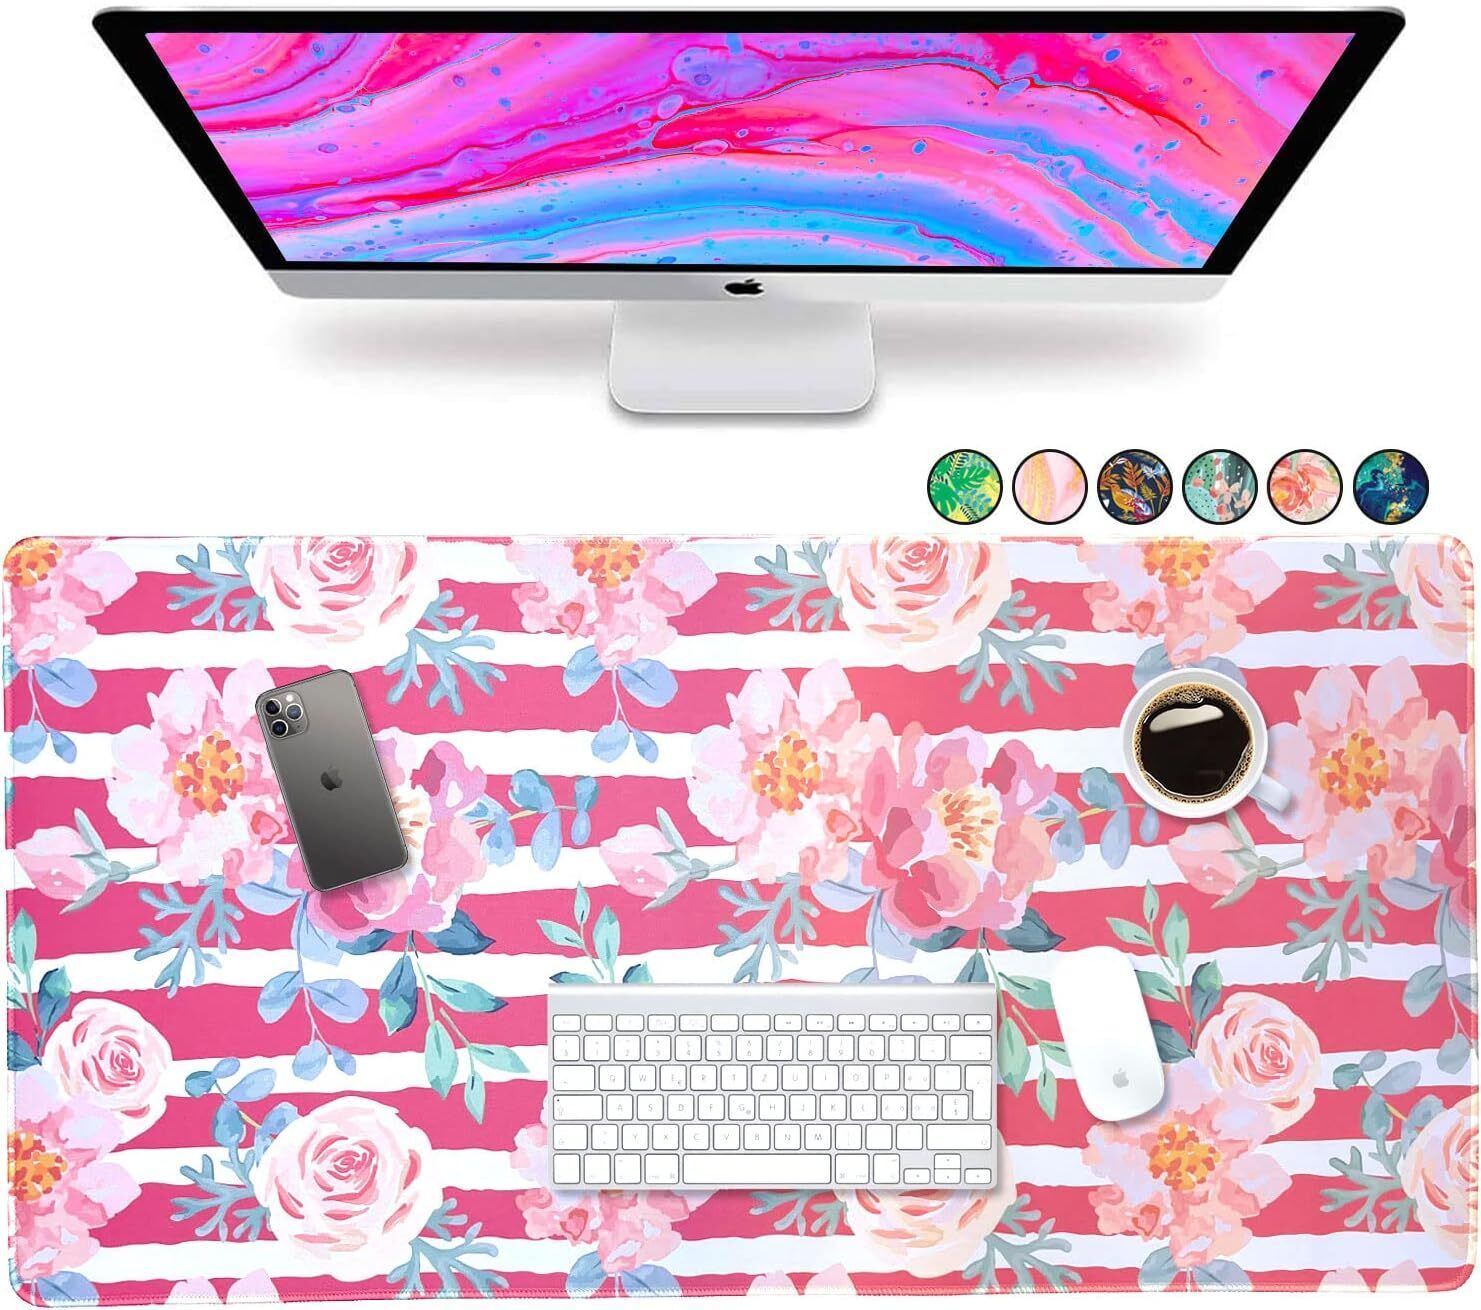  Large Mouse Computer Desk Mat Keyboard Pad Desktop Pink Floral Roses 30\